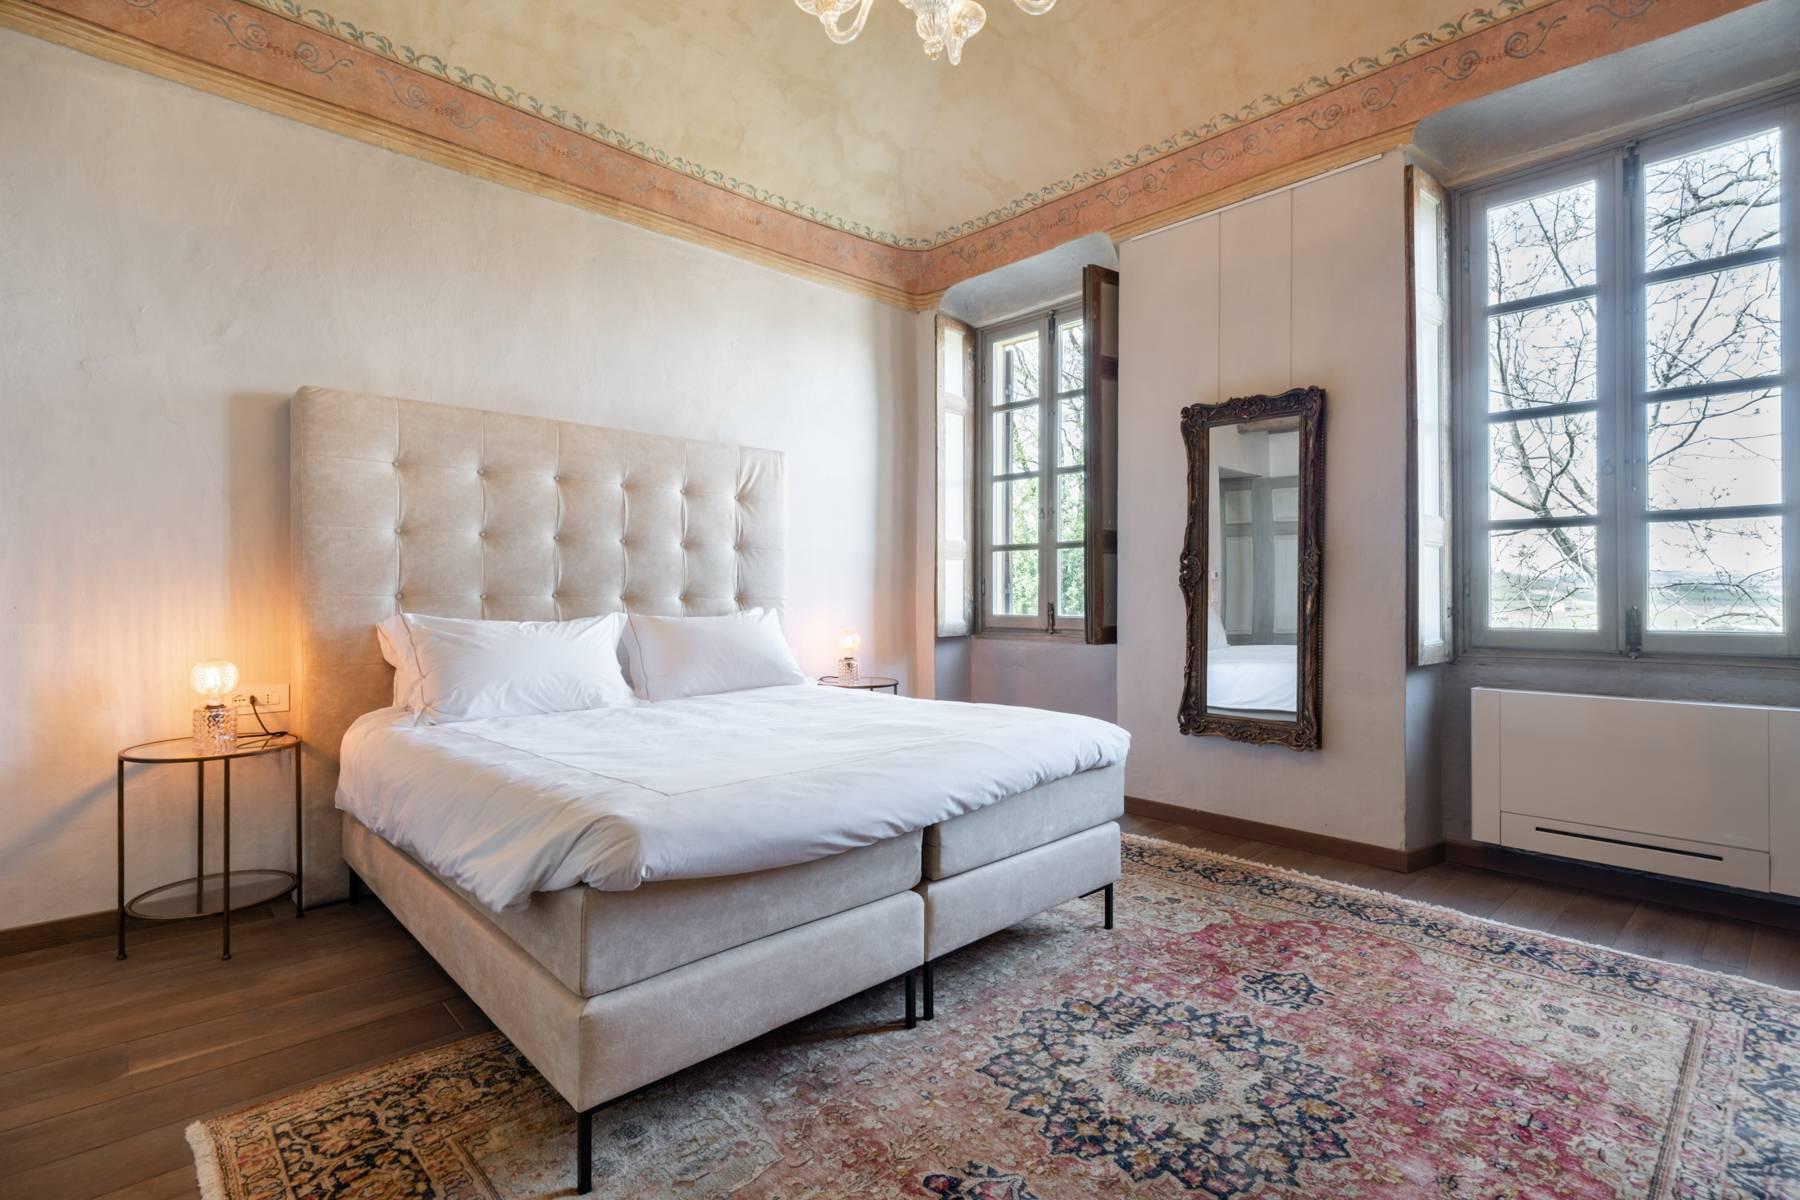 Prestigious historical villa in the renowned hills of Nizza Monferrato - 10